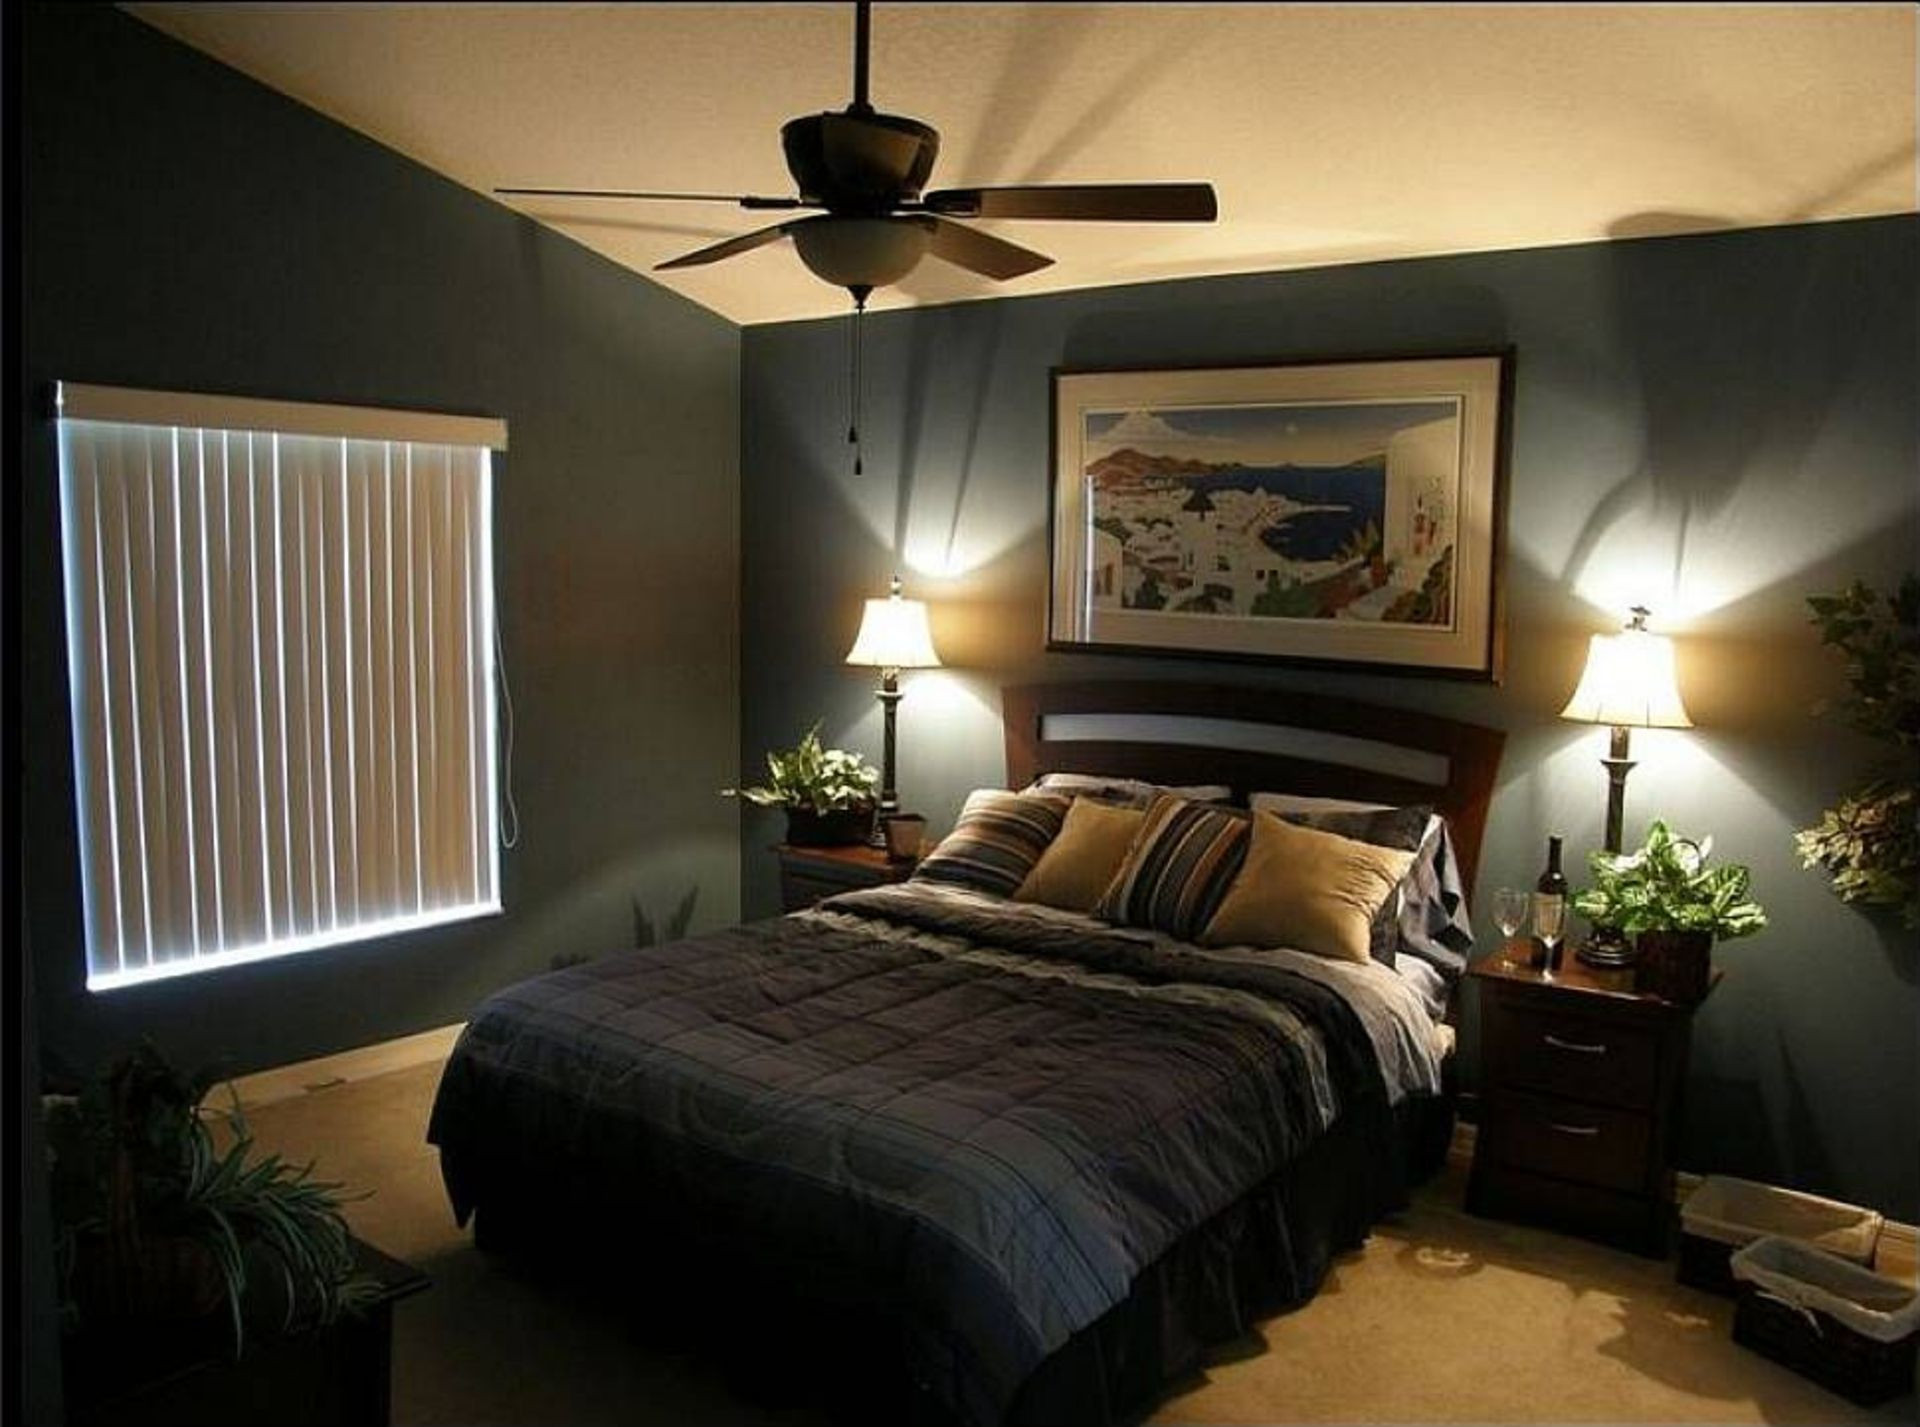 men's older bedroom furniture